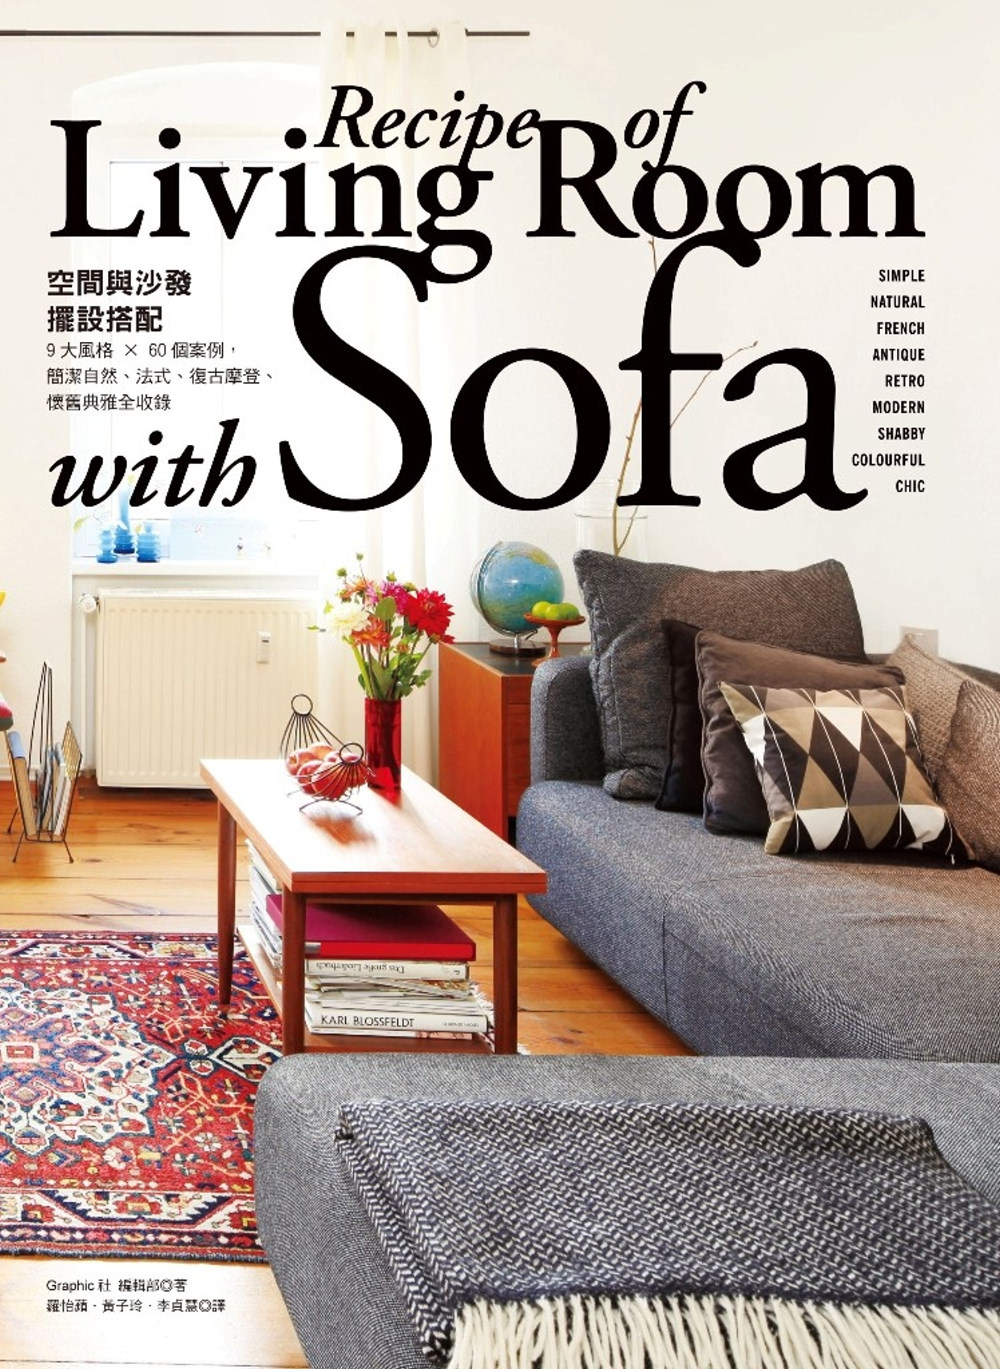 「空間與沙發」擺設搭配Life with sofa：9大風格...